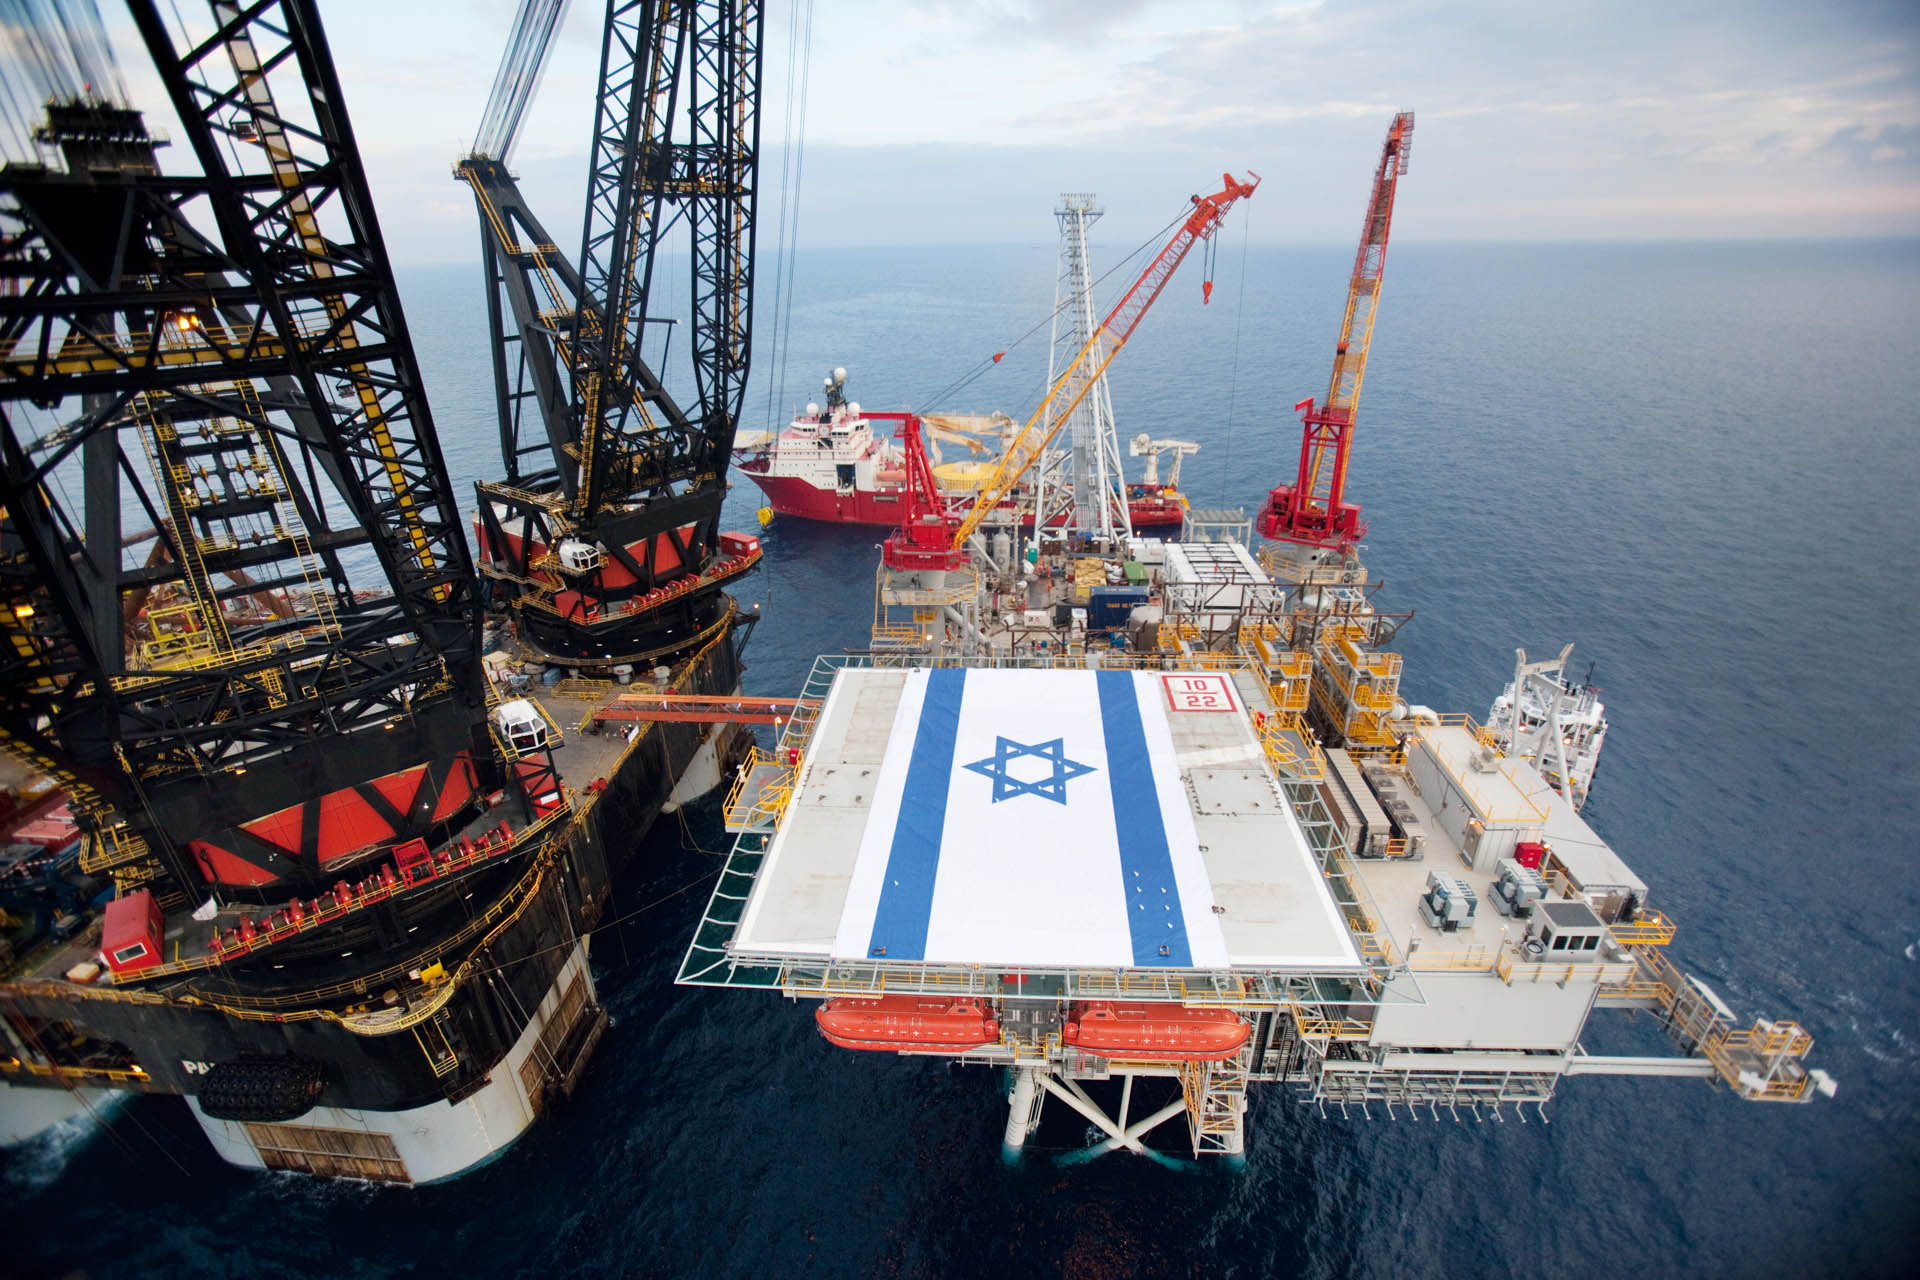 Lexpansion israélienne Gaza énergie et réserves de gaz